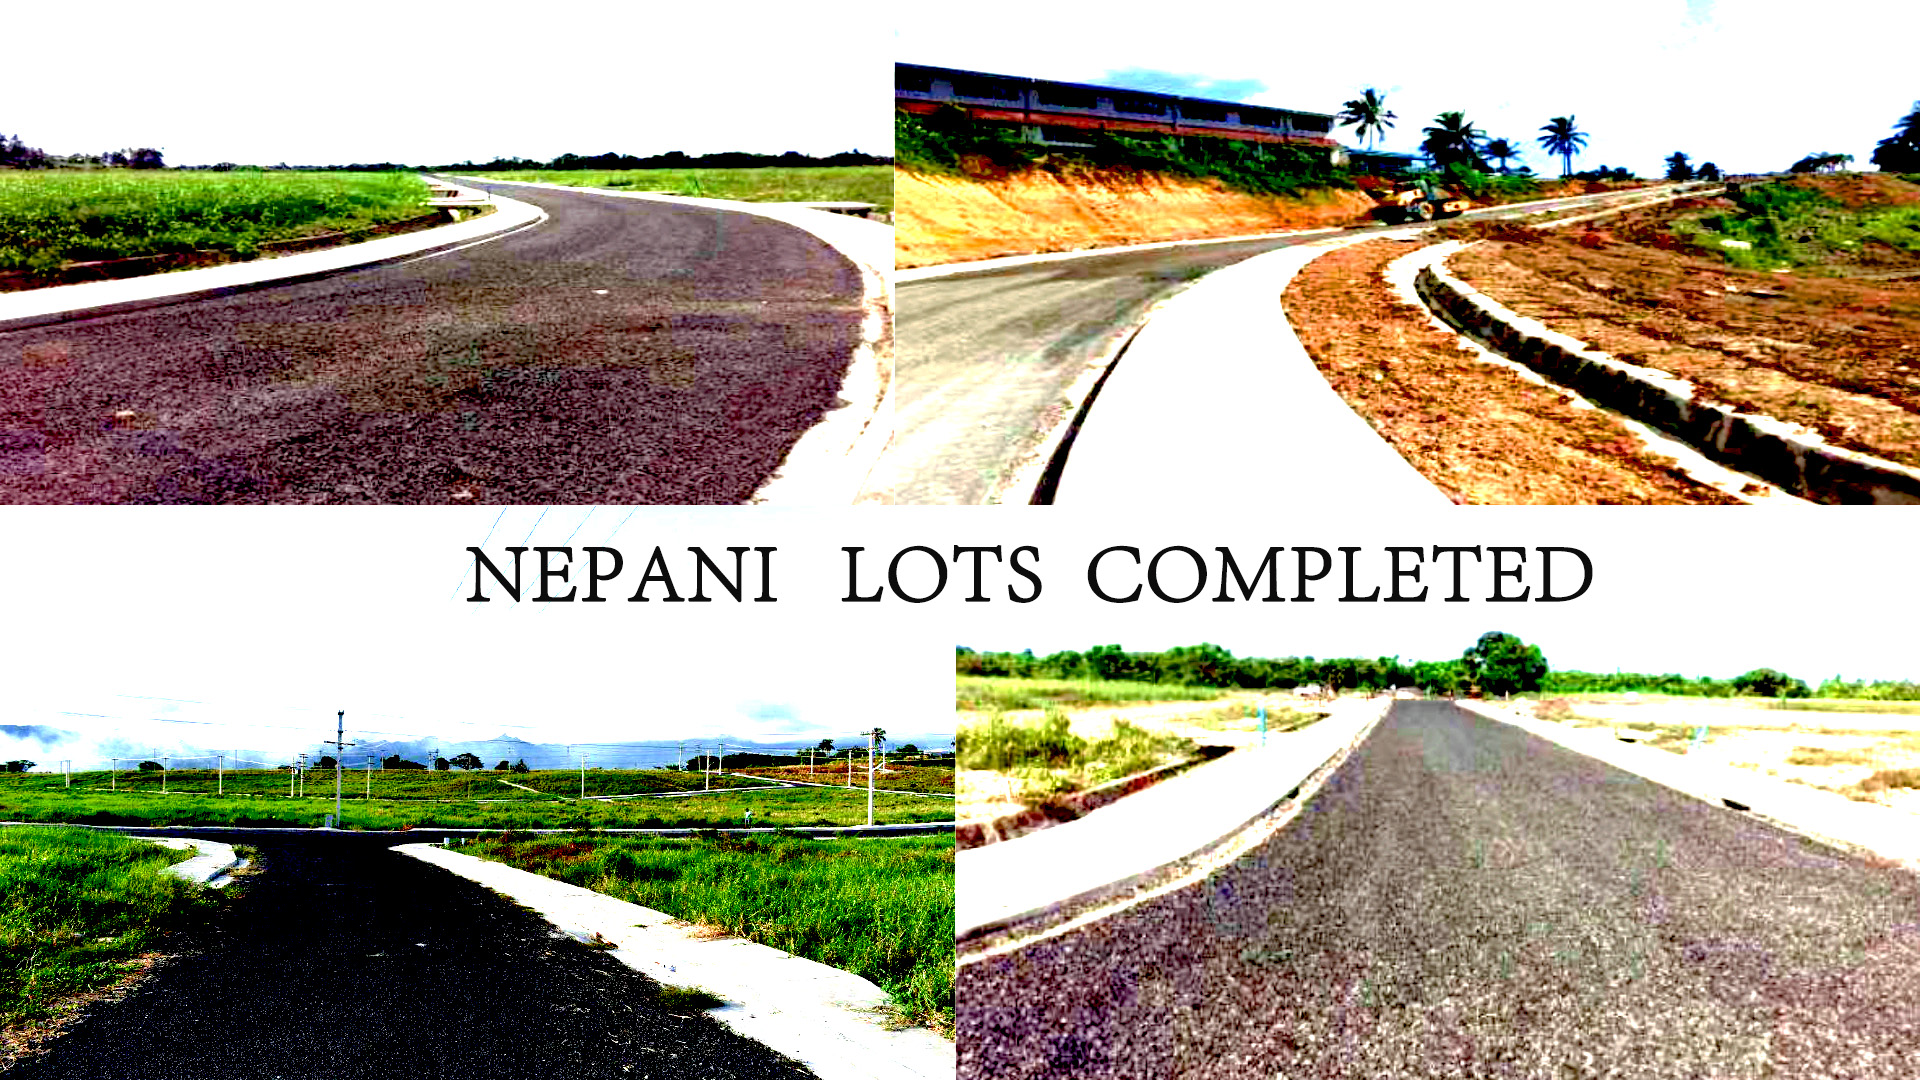 Nepani Lots after development